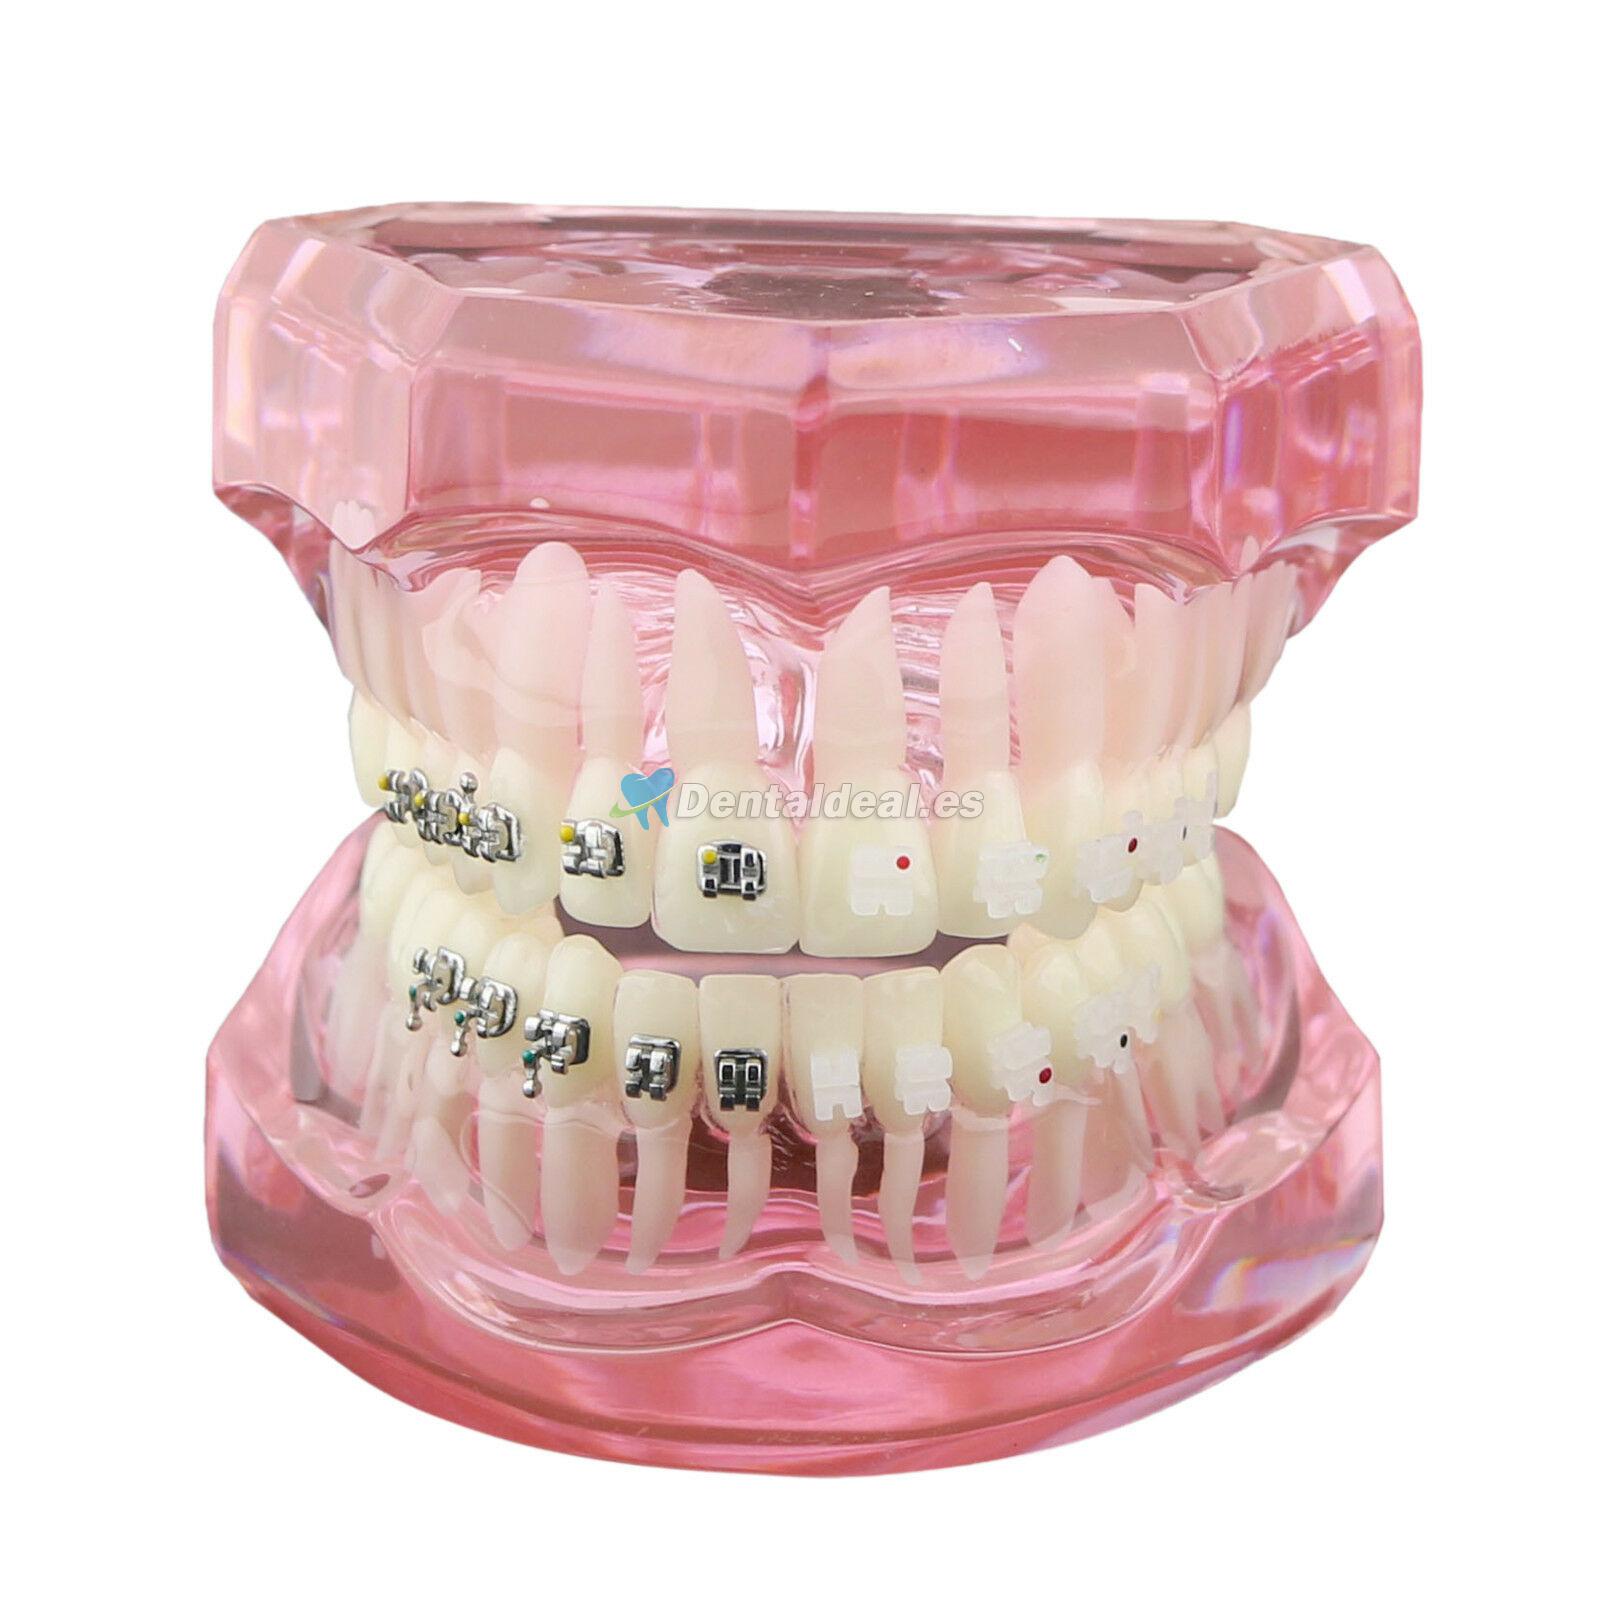 Dientes de ortodoncia dental Modelo de metal y soporte de cerámica Braces estudio modelo 3003